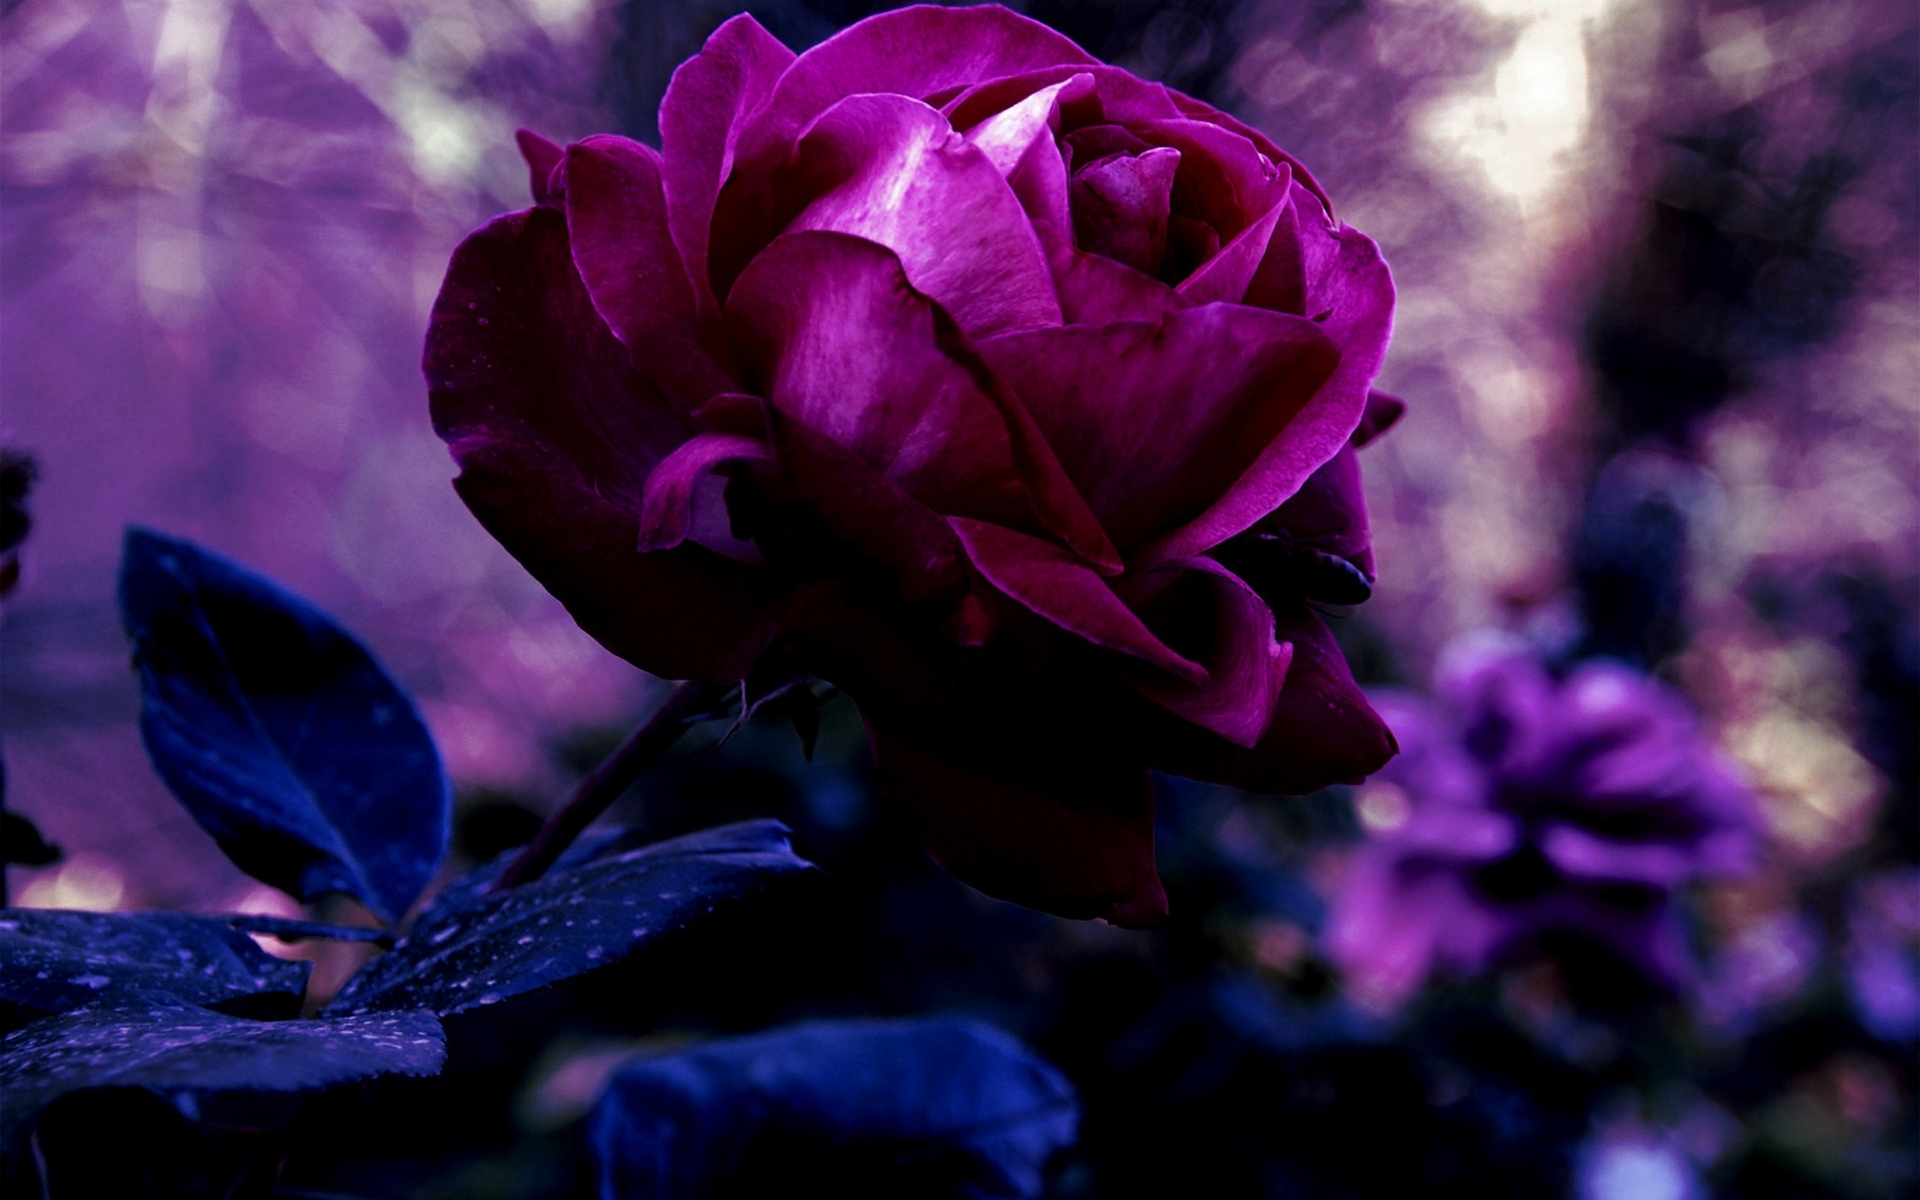 belle immagini di rose per carta da parati,viola,petalo,viola,fiore,blu